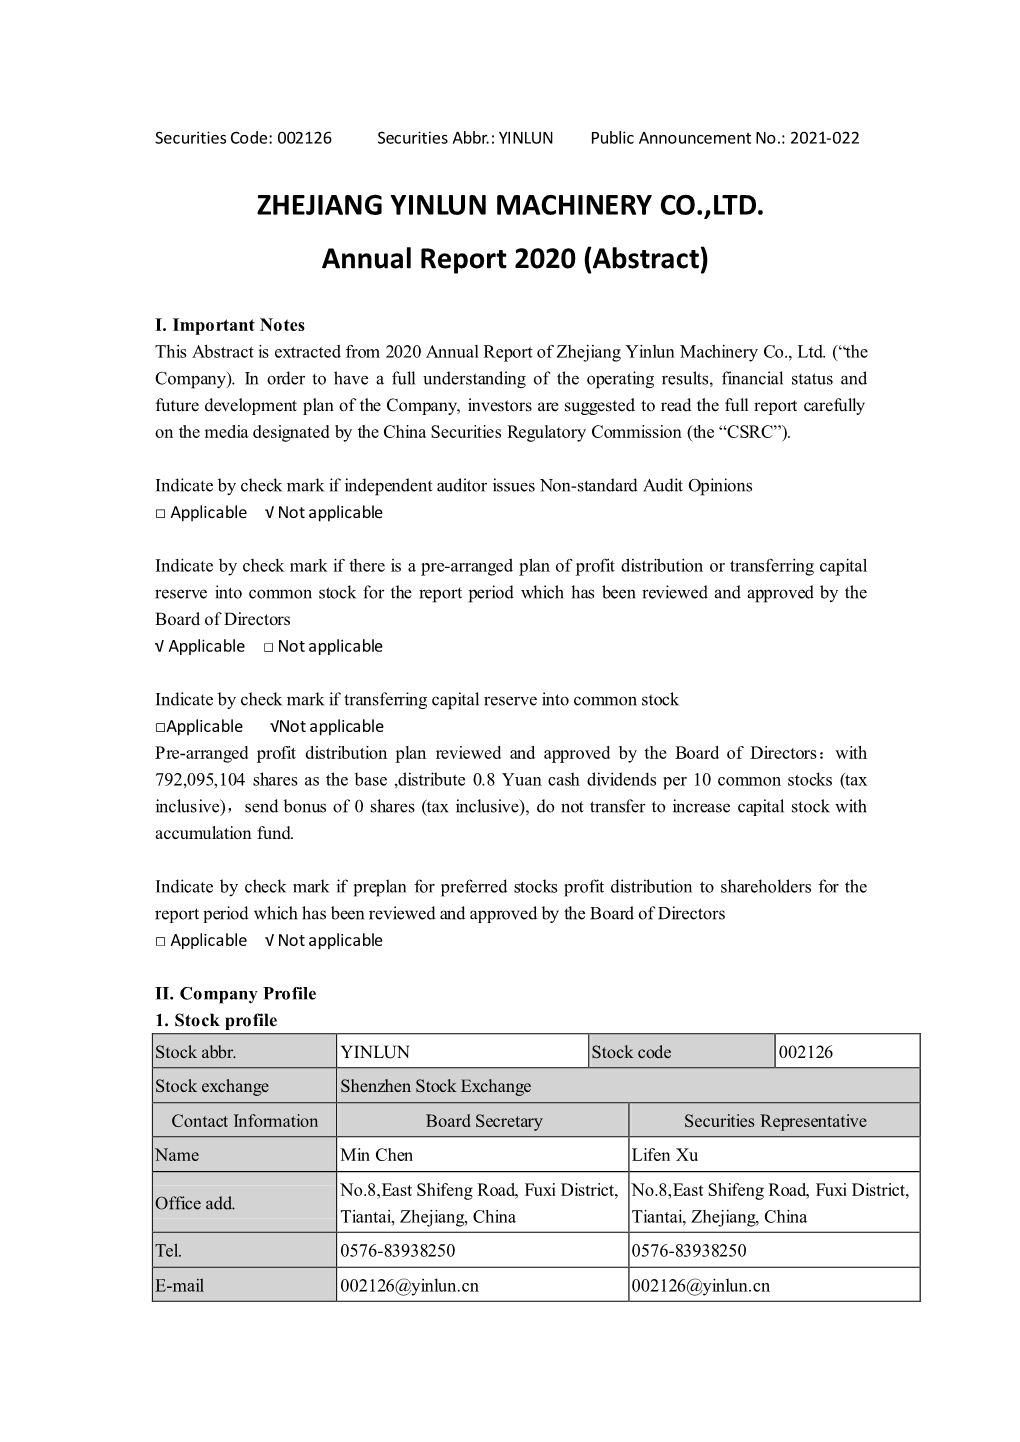 ZHEJIANG YINLUN MACHINERY CO.,LTD. Annual Report 2020